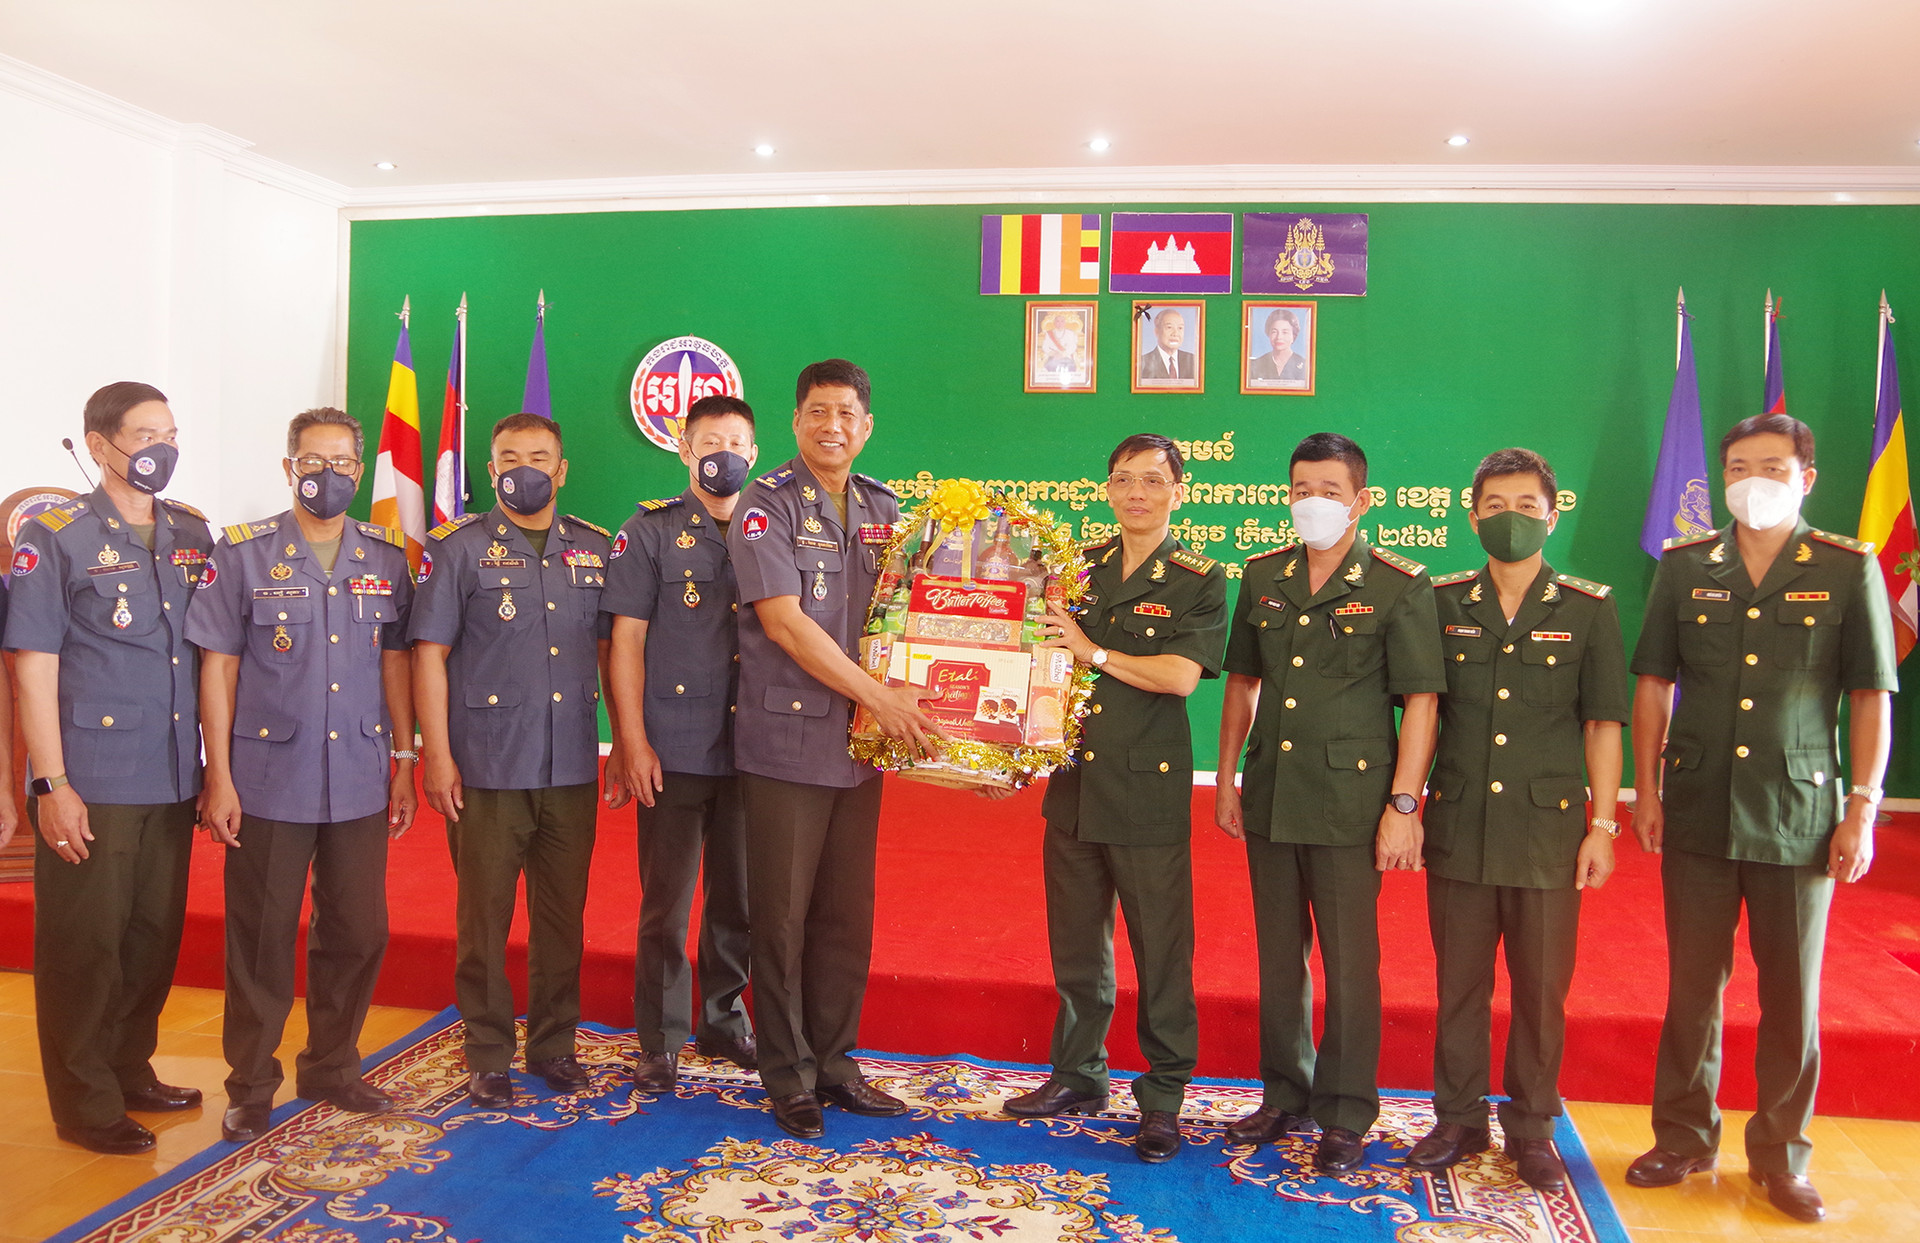 Đại tá Nguyễn Văn Lư, Chỉ huy trưởng BĐBP Đăk Nông chúc mừng lực lượng Hiến binh tỉnh Mondulkiri, Campuchia.